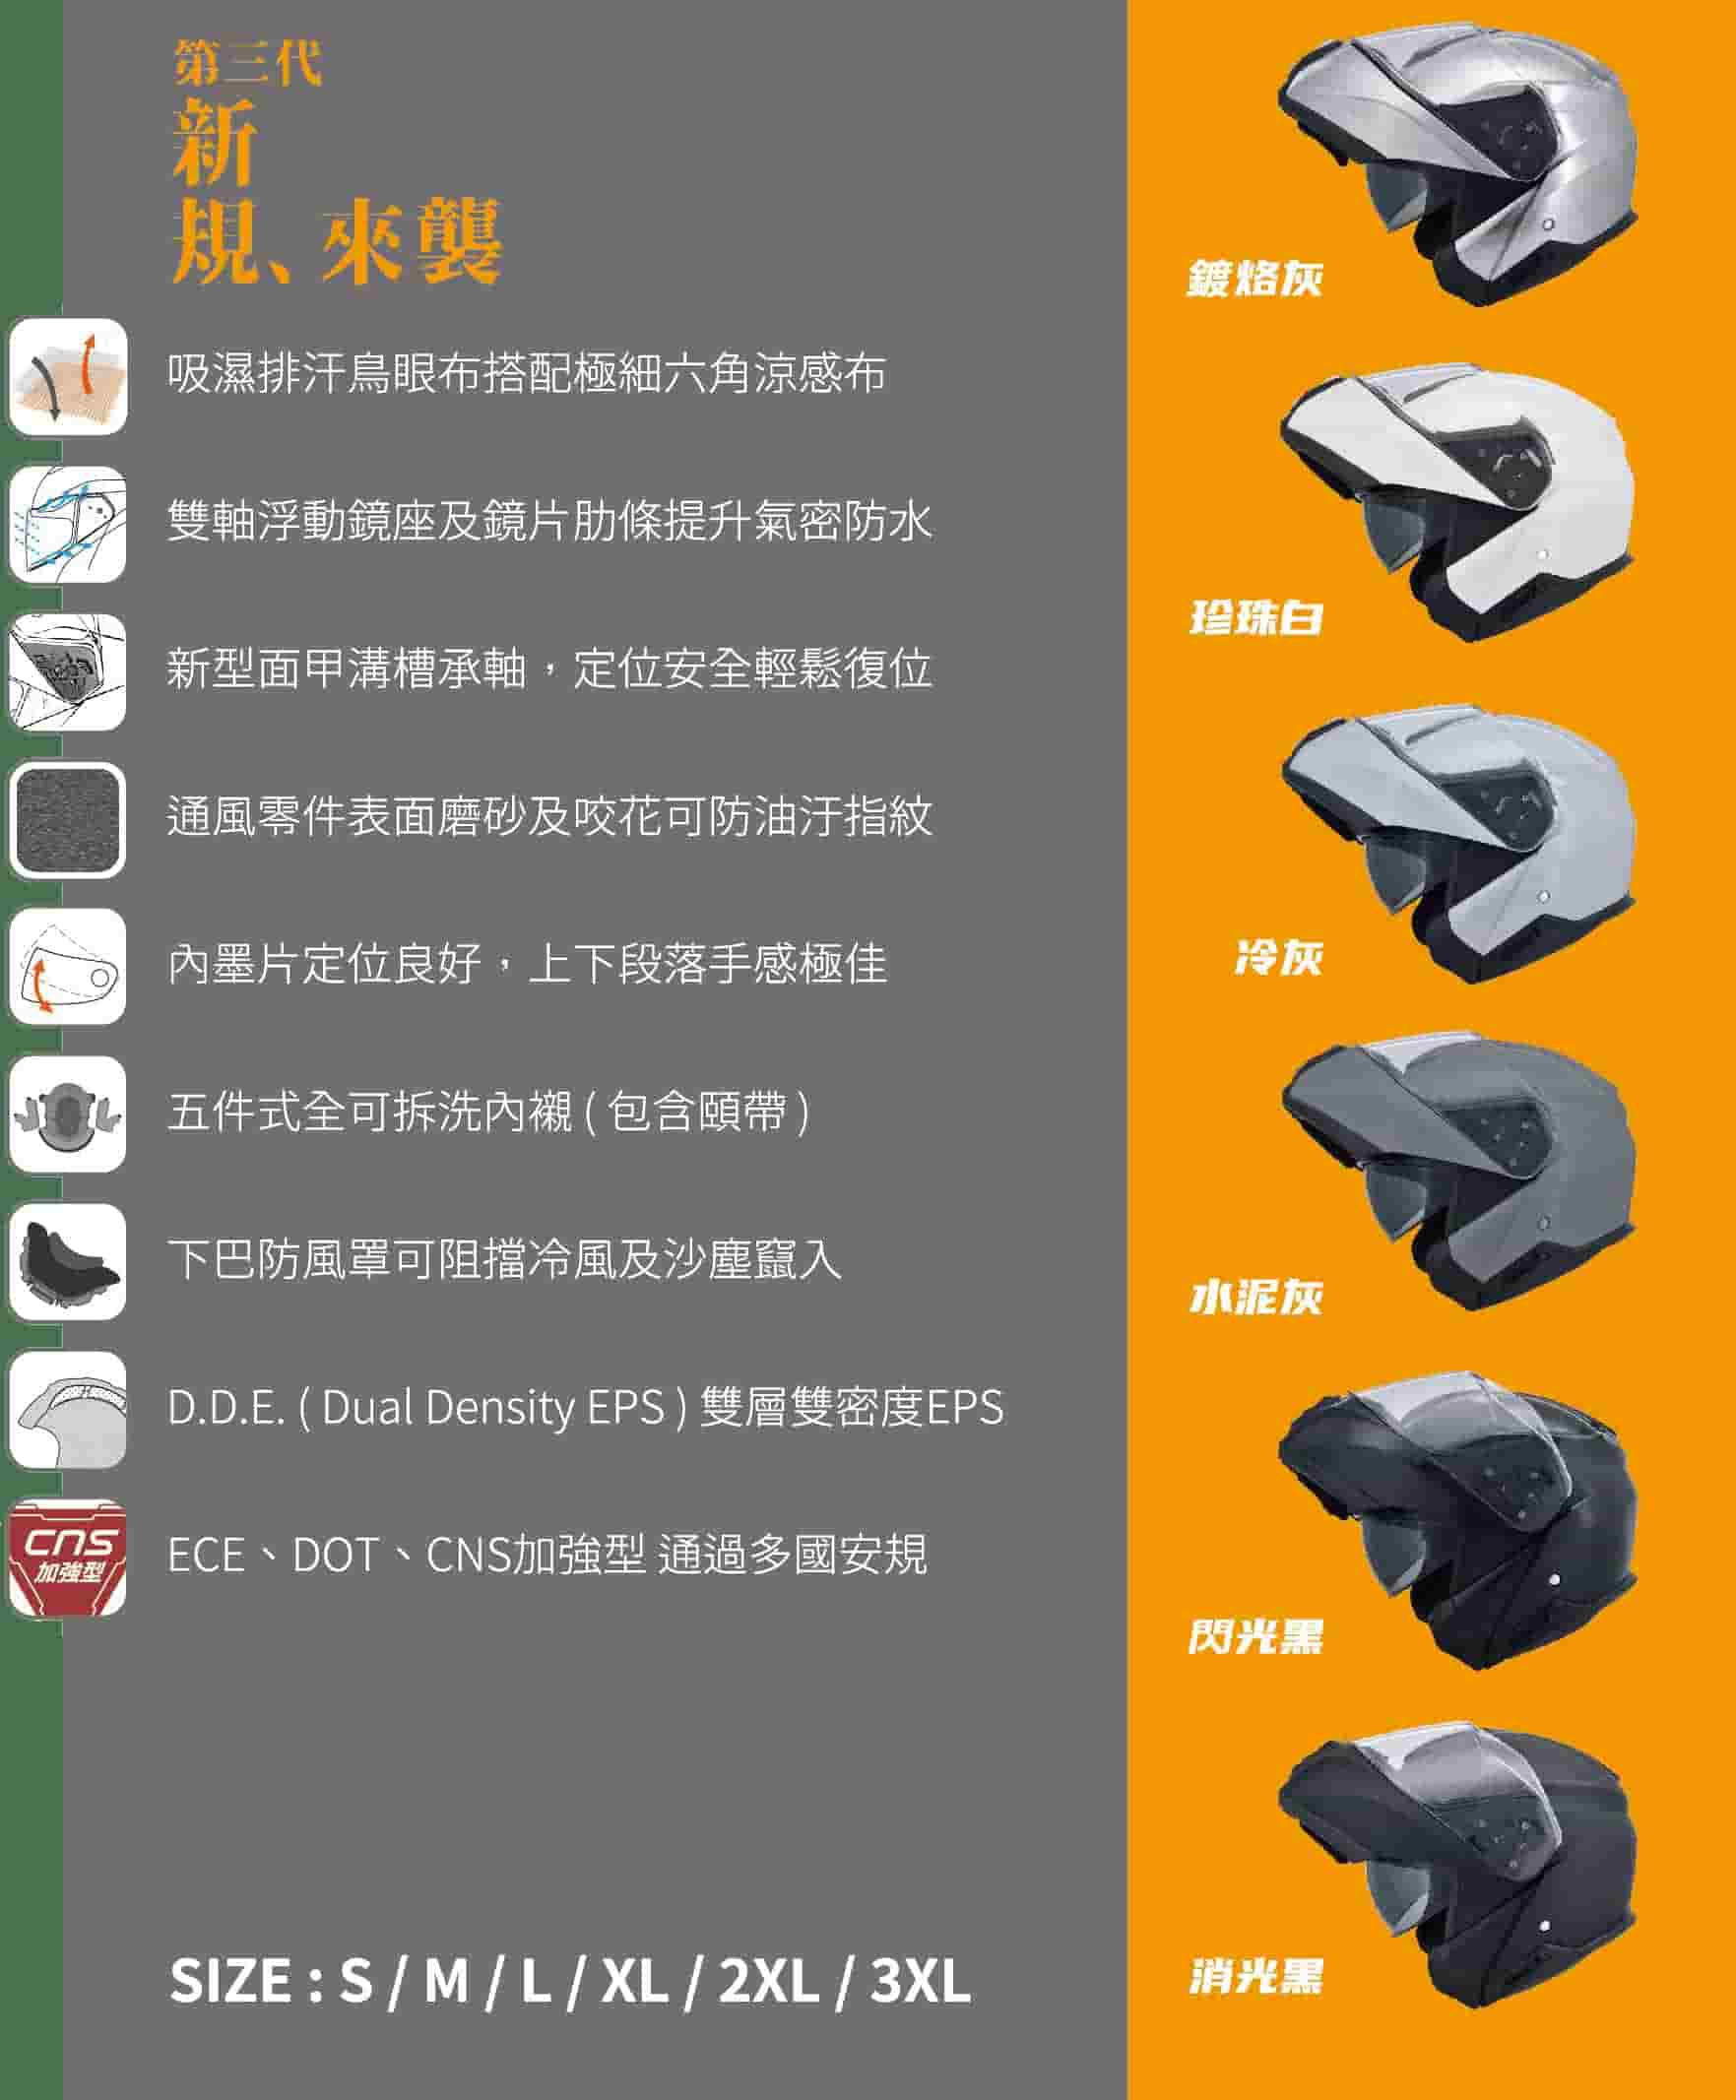 OX-3汽水帽—商品特點說明